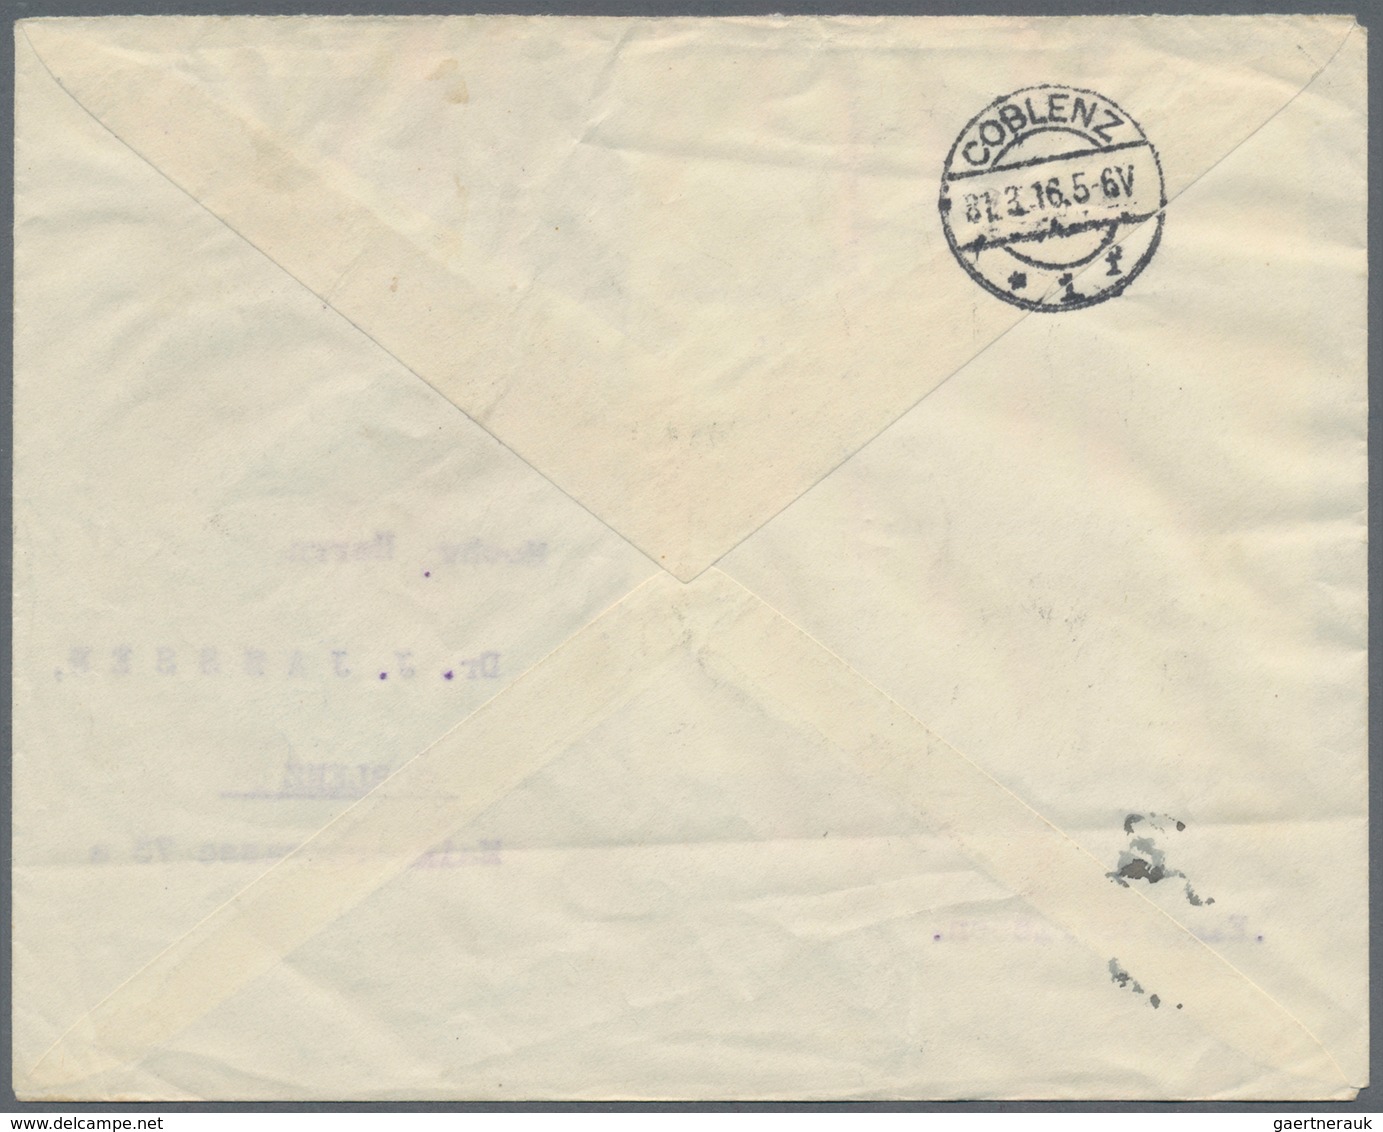 Bosnien Und Herzegowina (Österreich 1879/1918): 1916. Registered Cover (light Fold) To COBLENZ Beari - Bosnien-Herzegowina